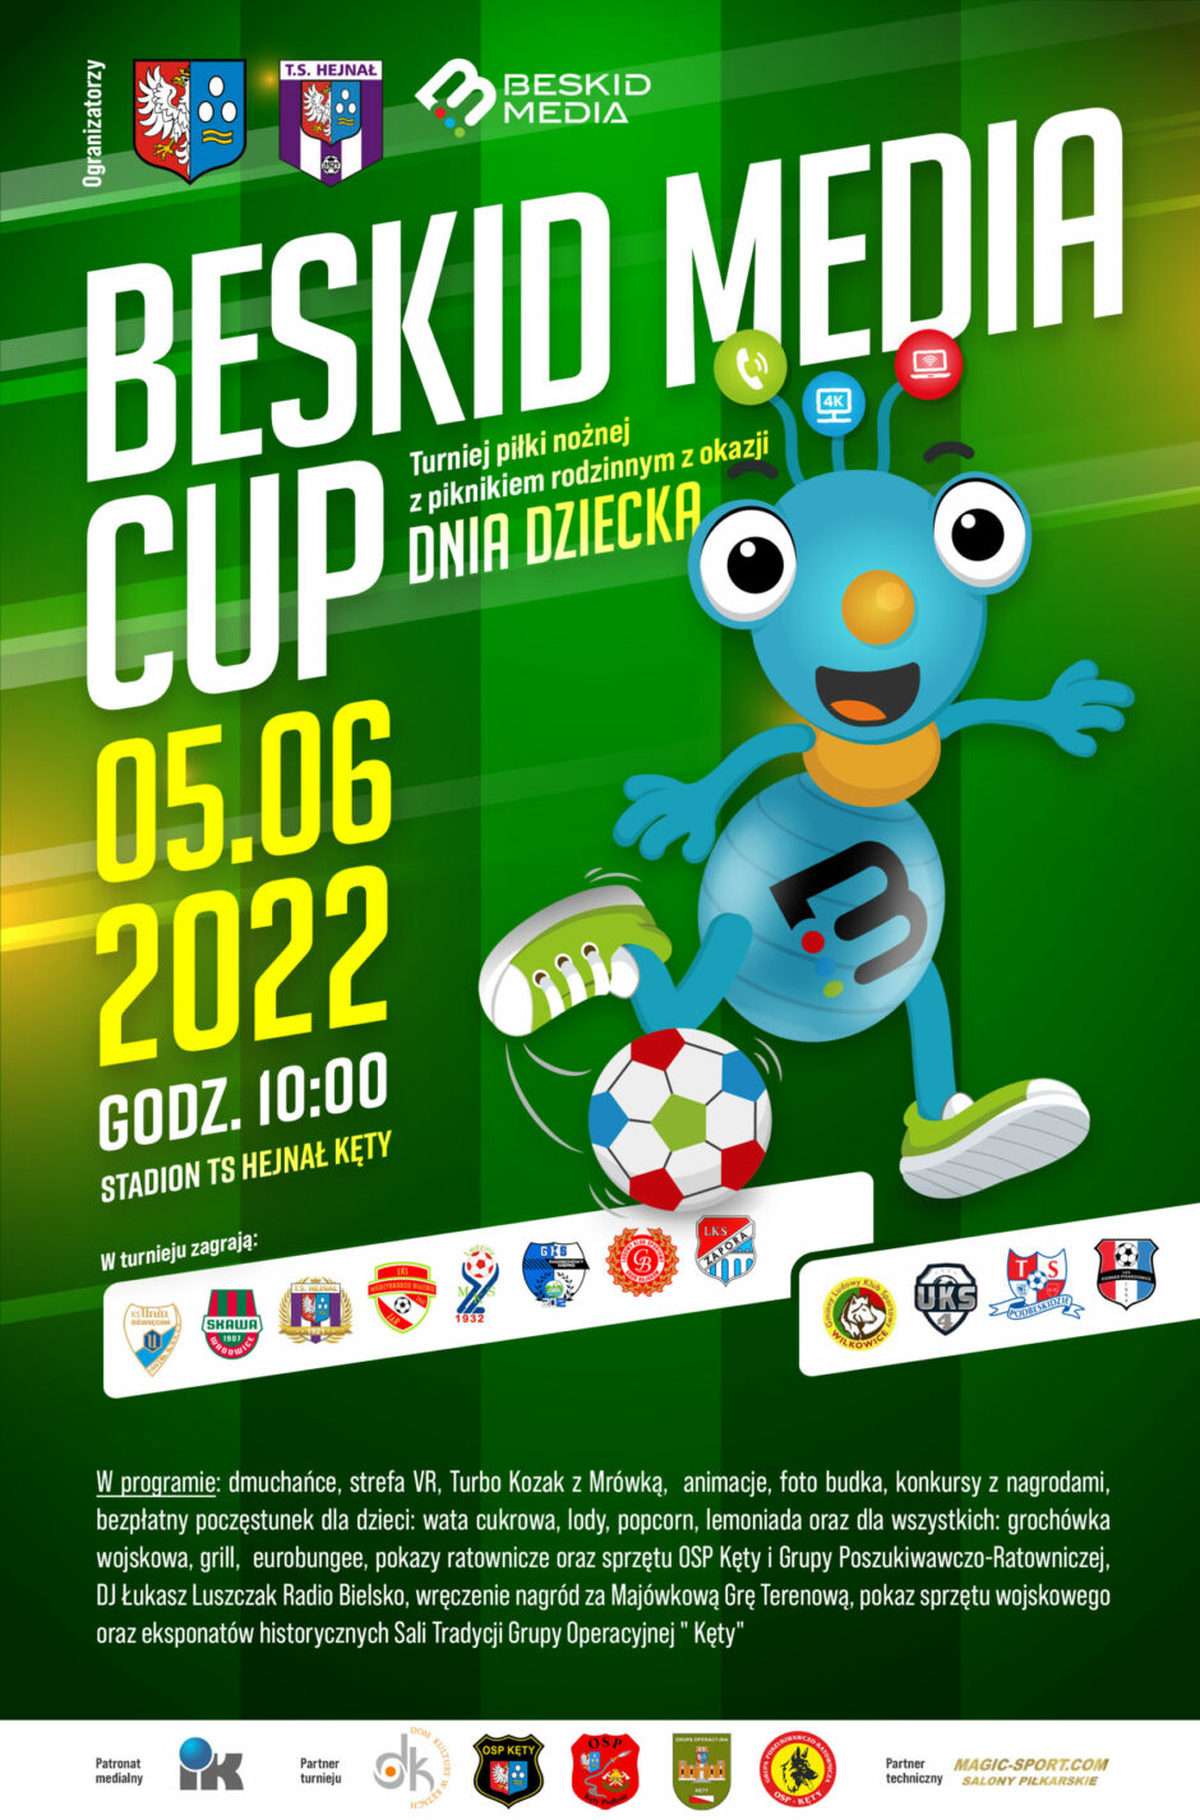 W niedzielę odbędzie się Beskid Media Cup